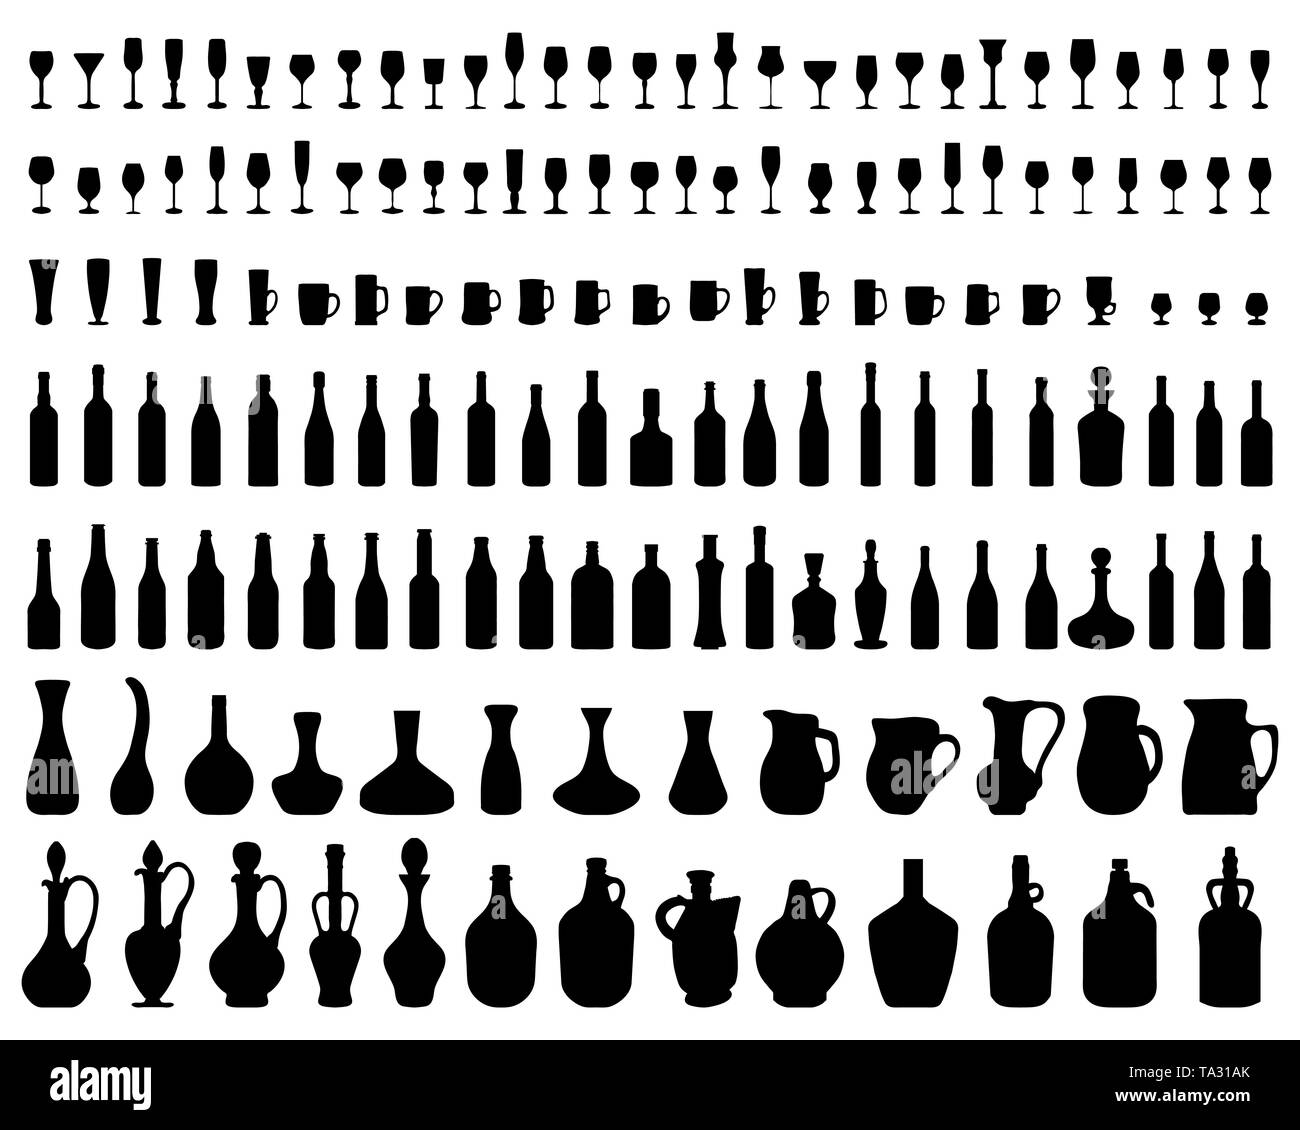 Silhouettes de bols, bouteilles et verres sur un fond blanc Banque D'Images